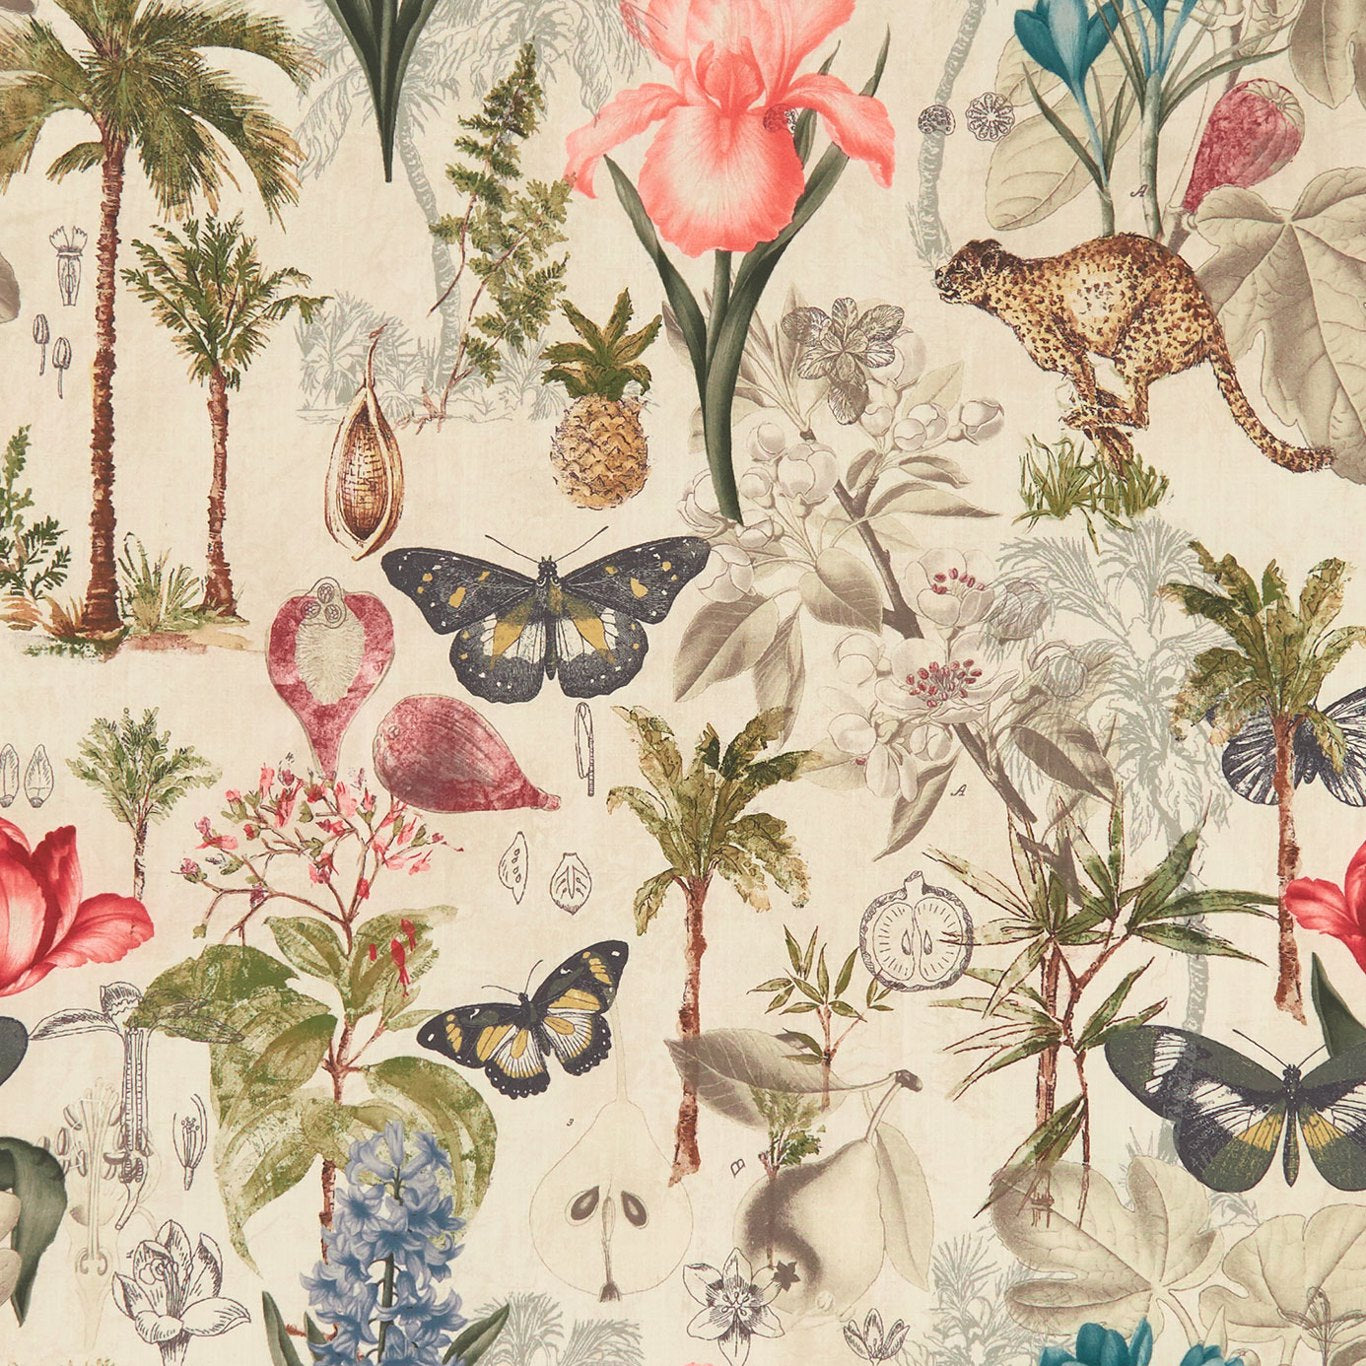 Botany Fabric by Clarke & Clarke - F1297/03 - Tropical